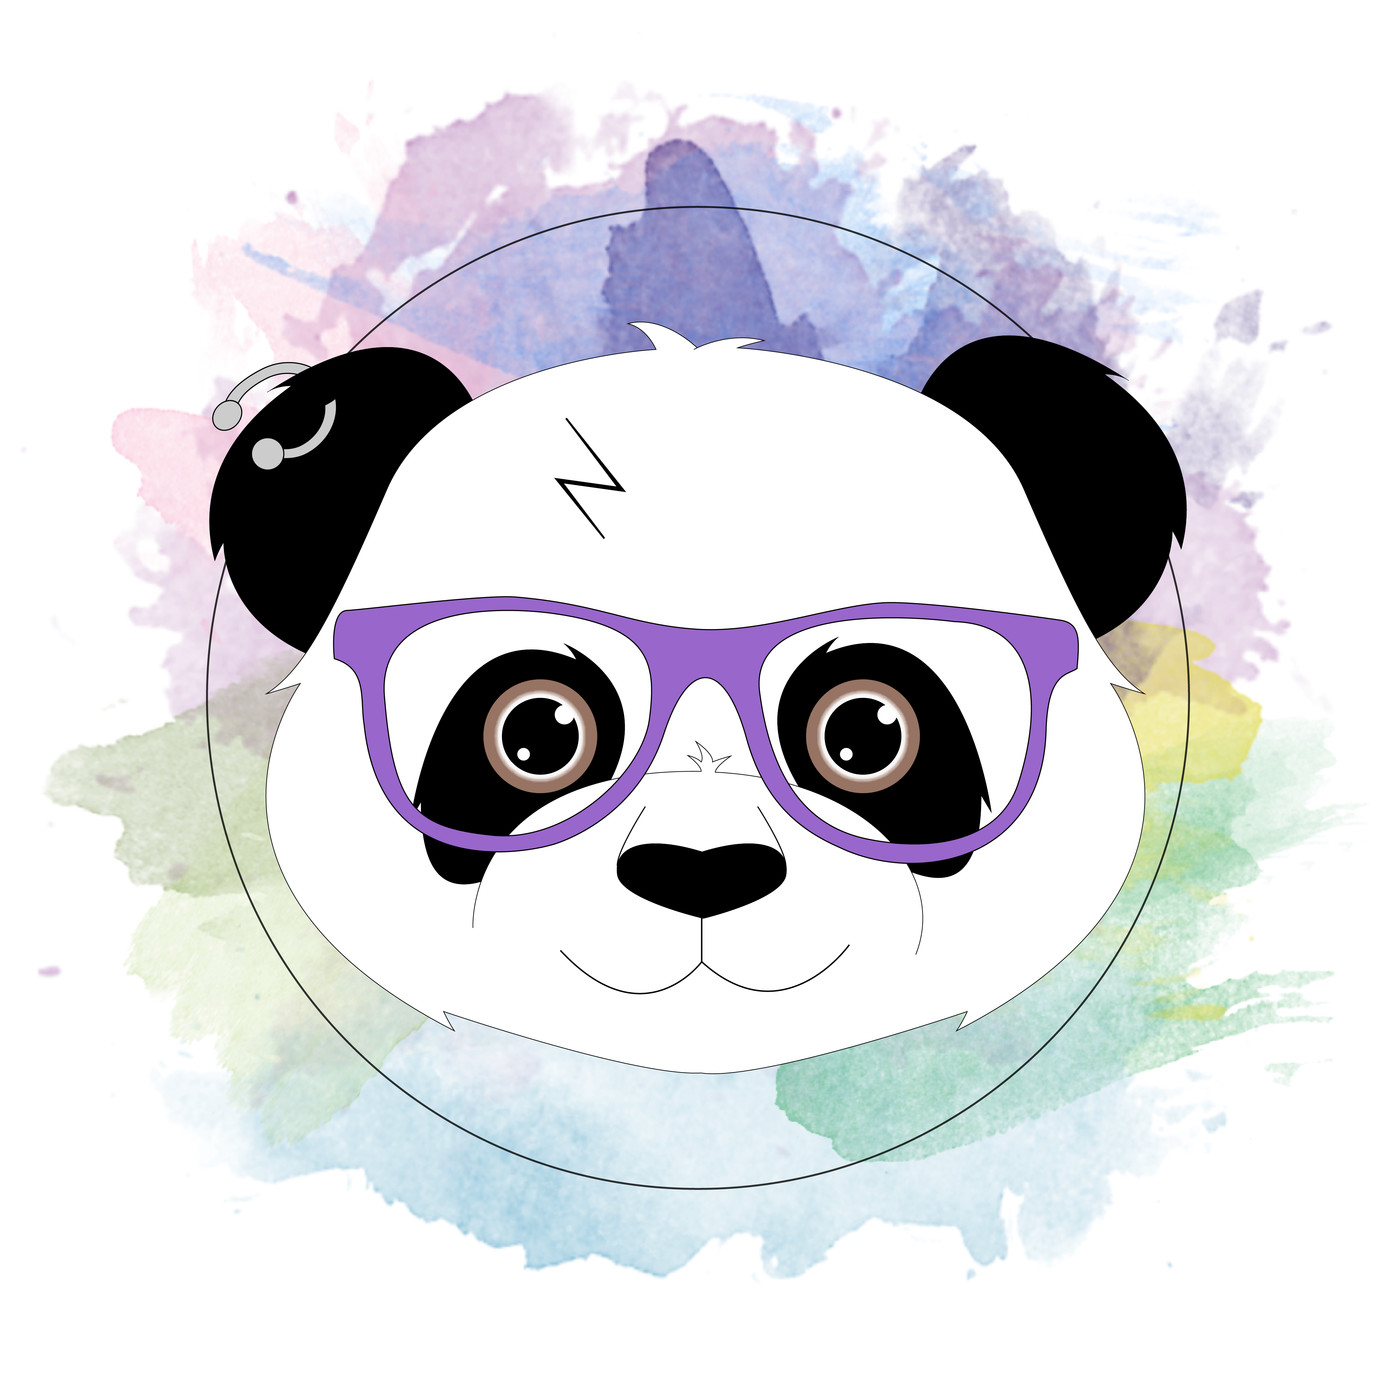 Di Pandas' s02e10 'Rebelde Way'